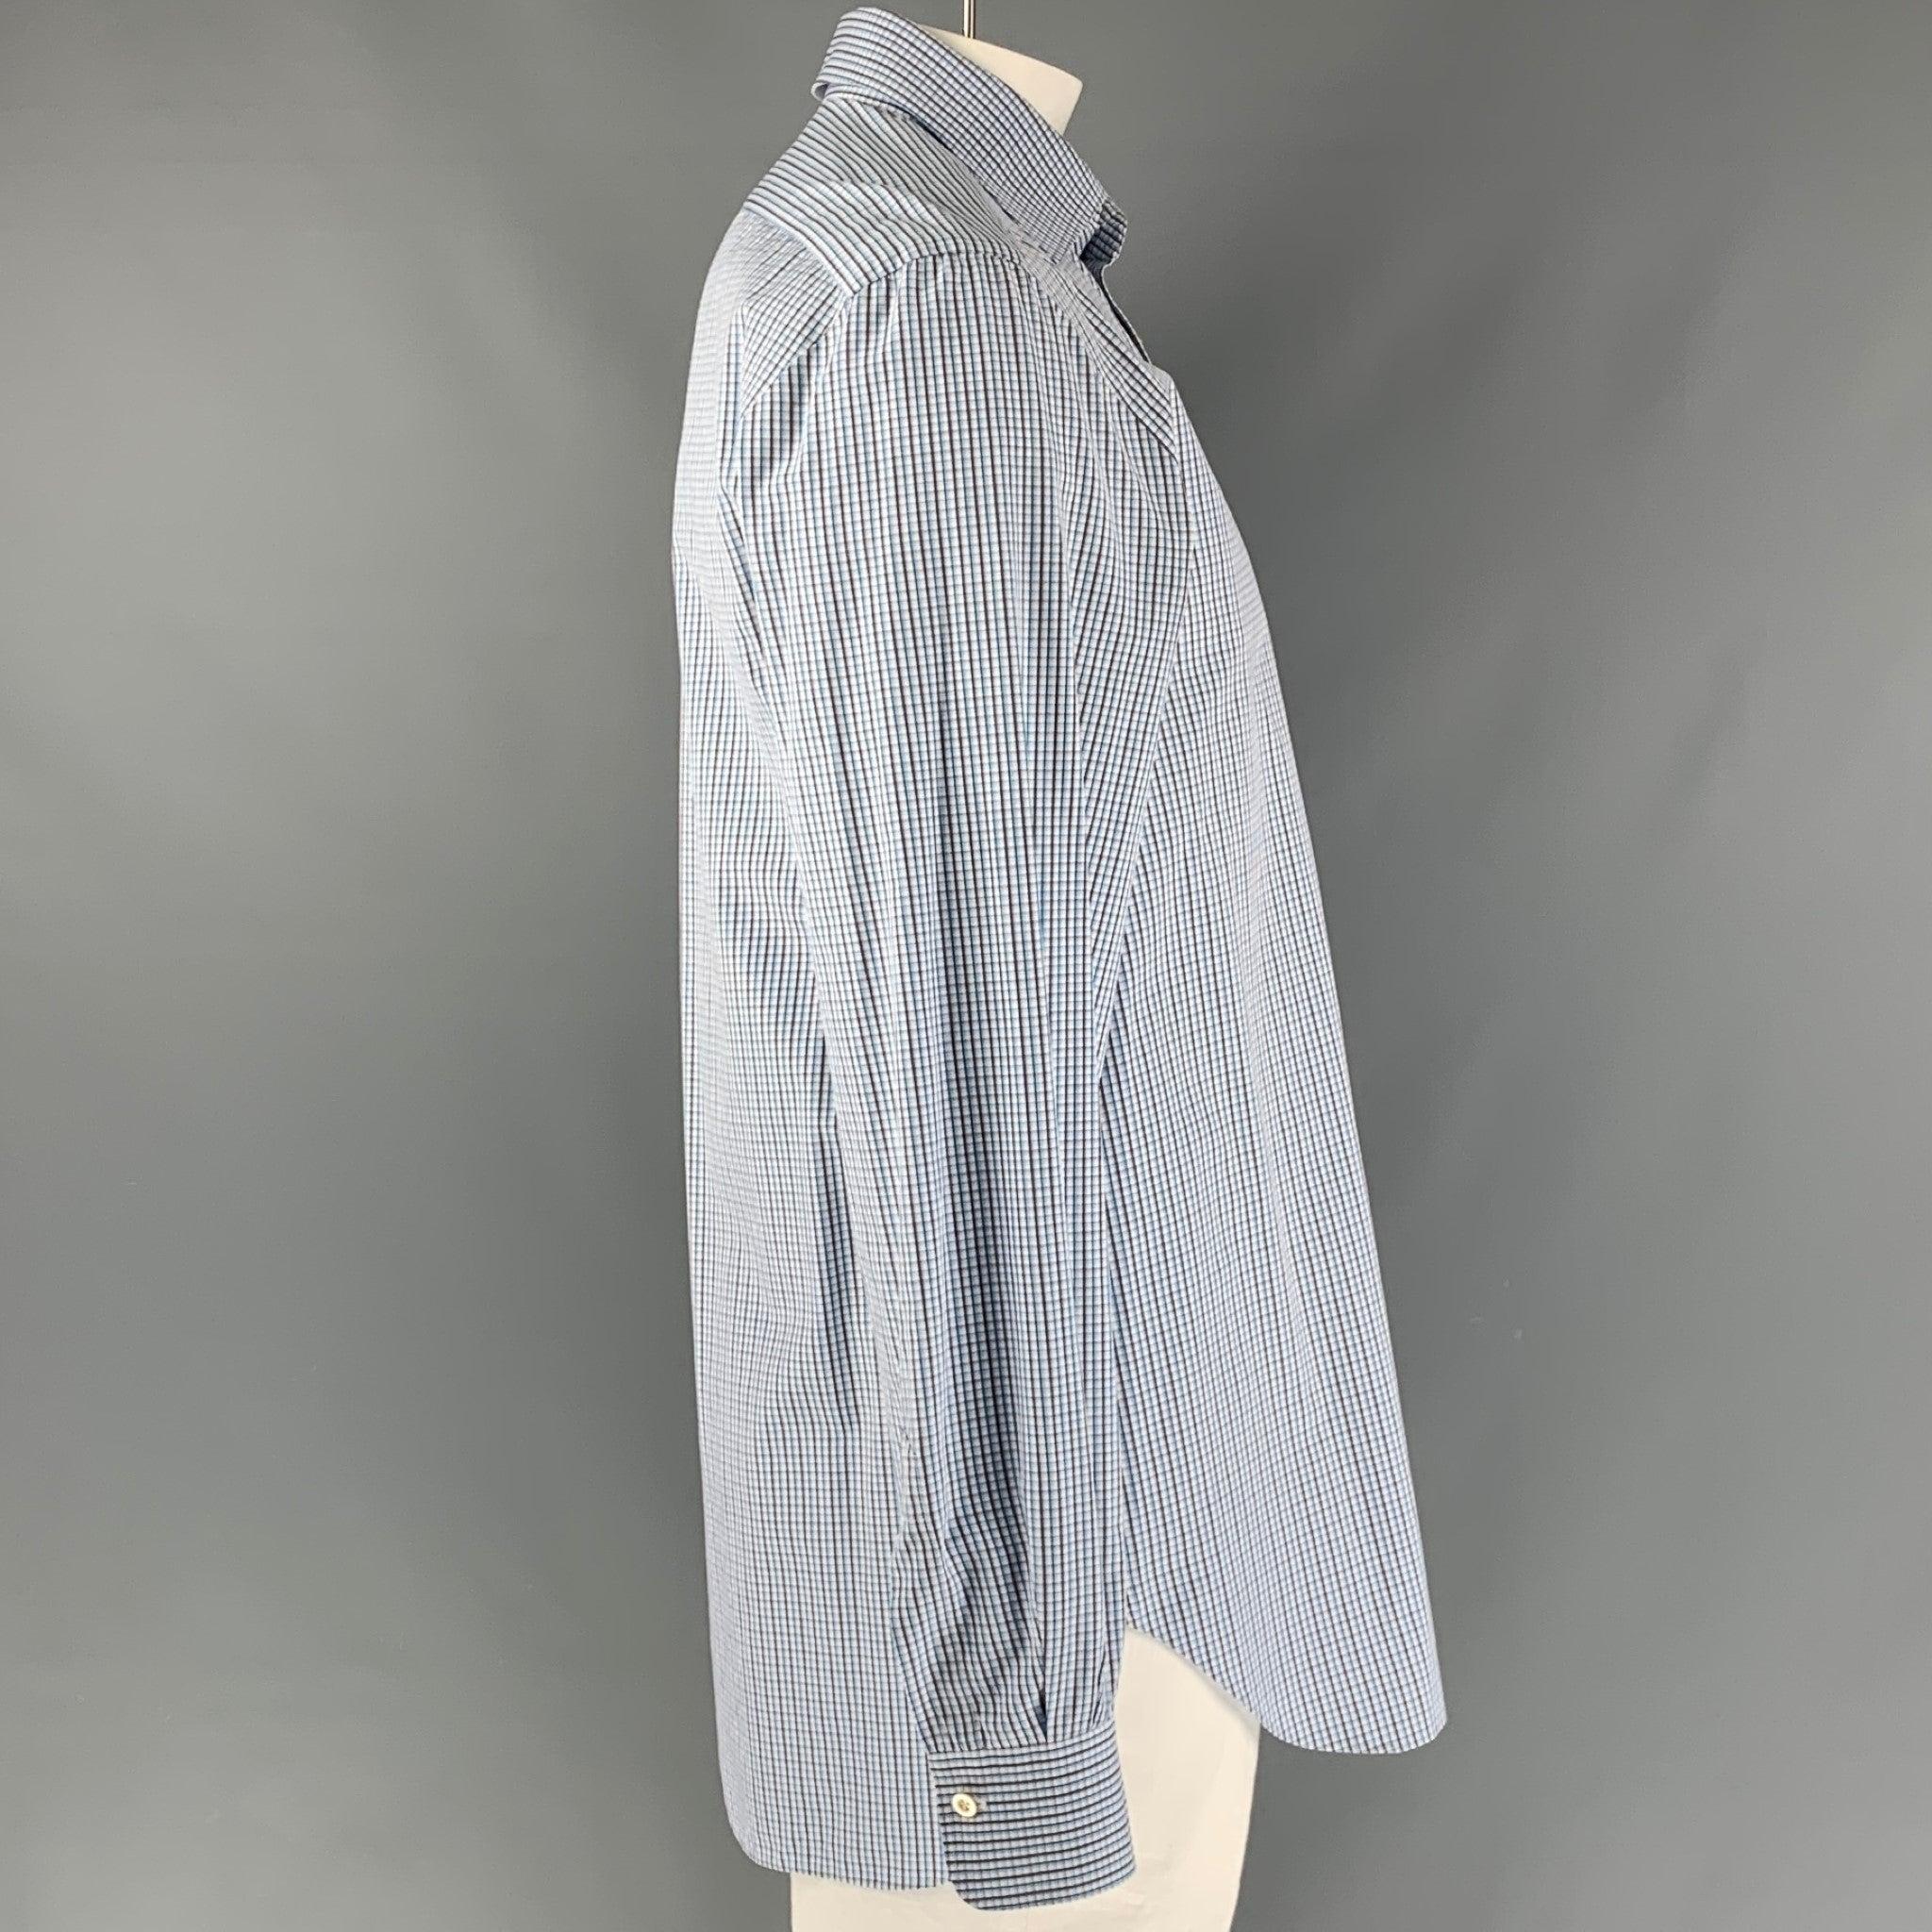 La chemise à manches longues en coton à carreaux blanc, bleu et gris de KITON est dotée d'un col rond et d'une fermeture à boutons. Fabriqué en Italie. Excellent état.  

Marqué :   43- 17  

Mesures : 
  
Épaule : 19 pouces Poitrine : 48 pouces